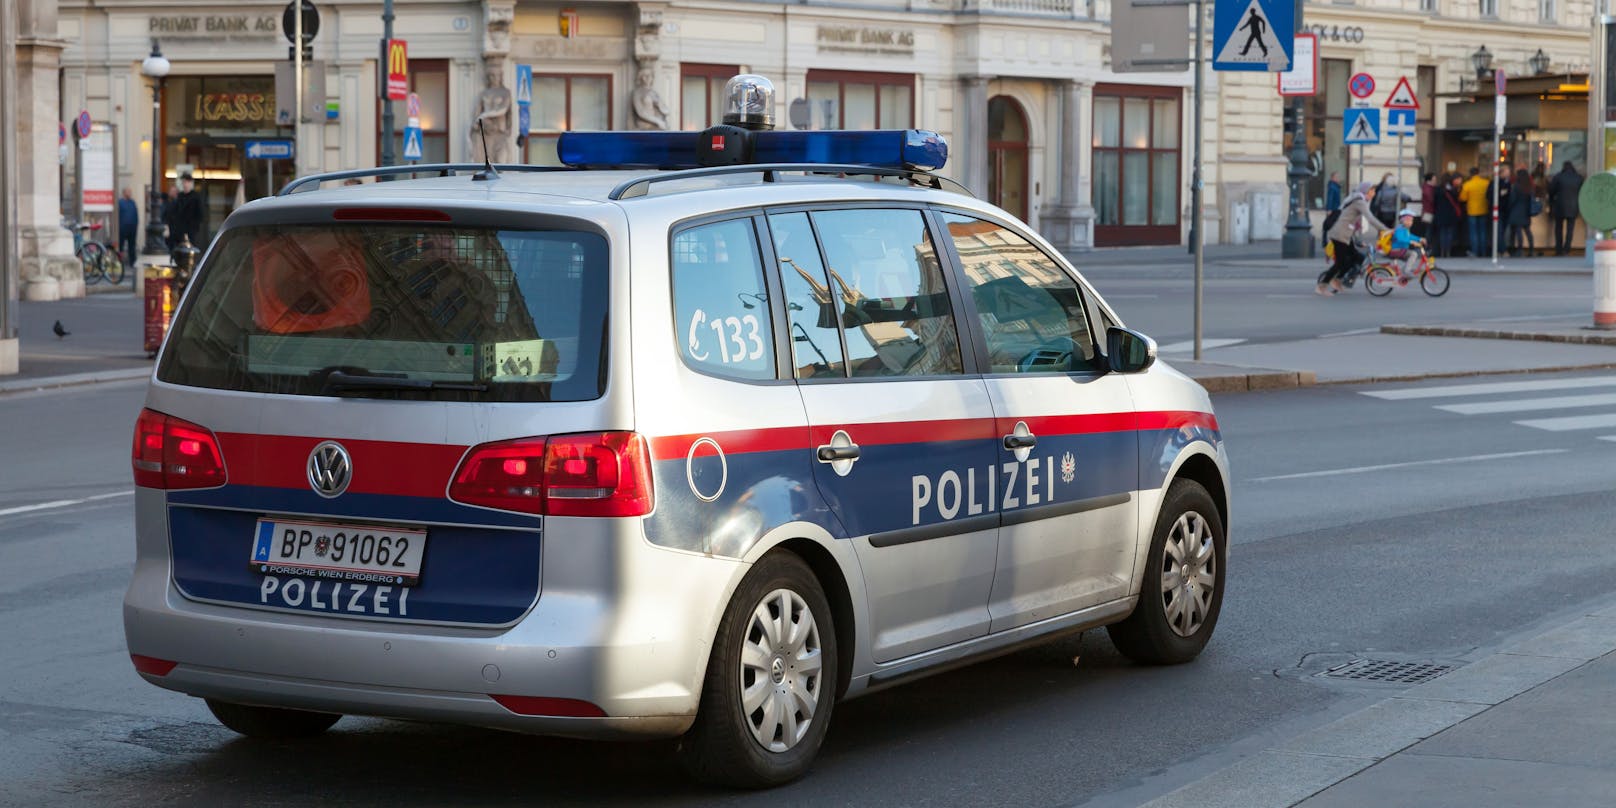 Es kam zu einem größeren Polizei-Einsatz in einem Park in Wien-Ottakring. (Symbolbild)